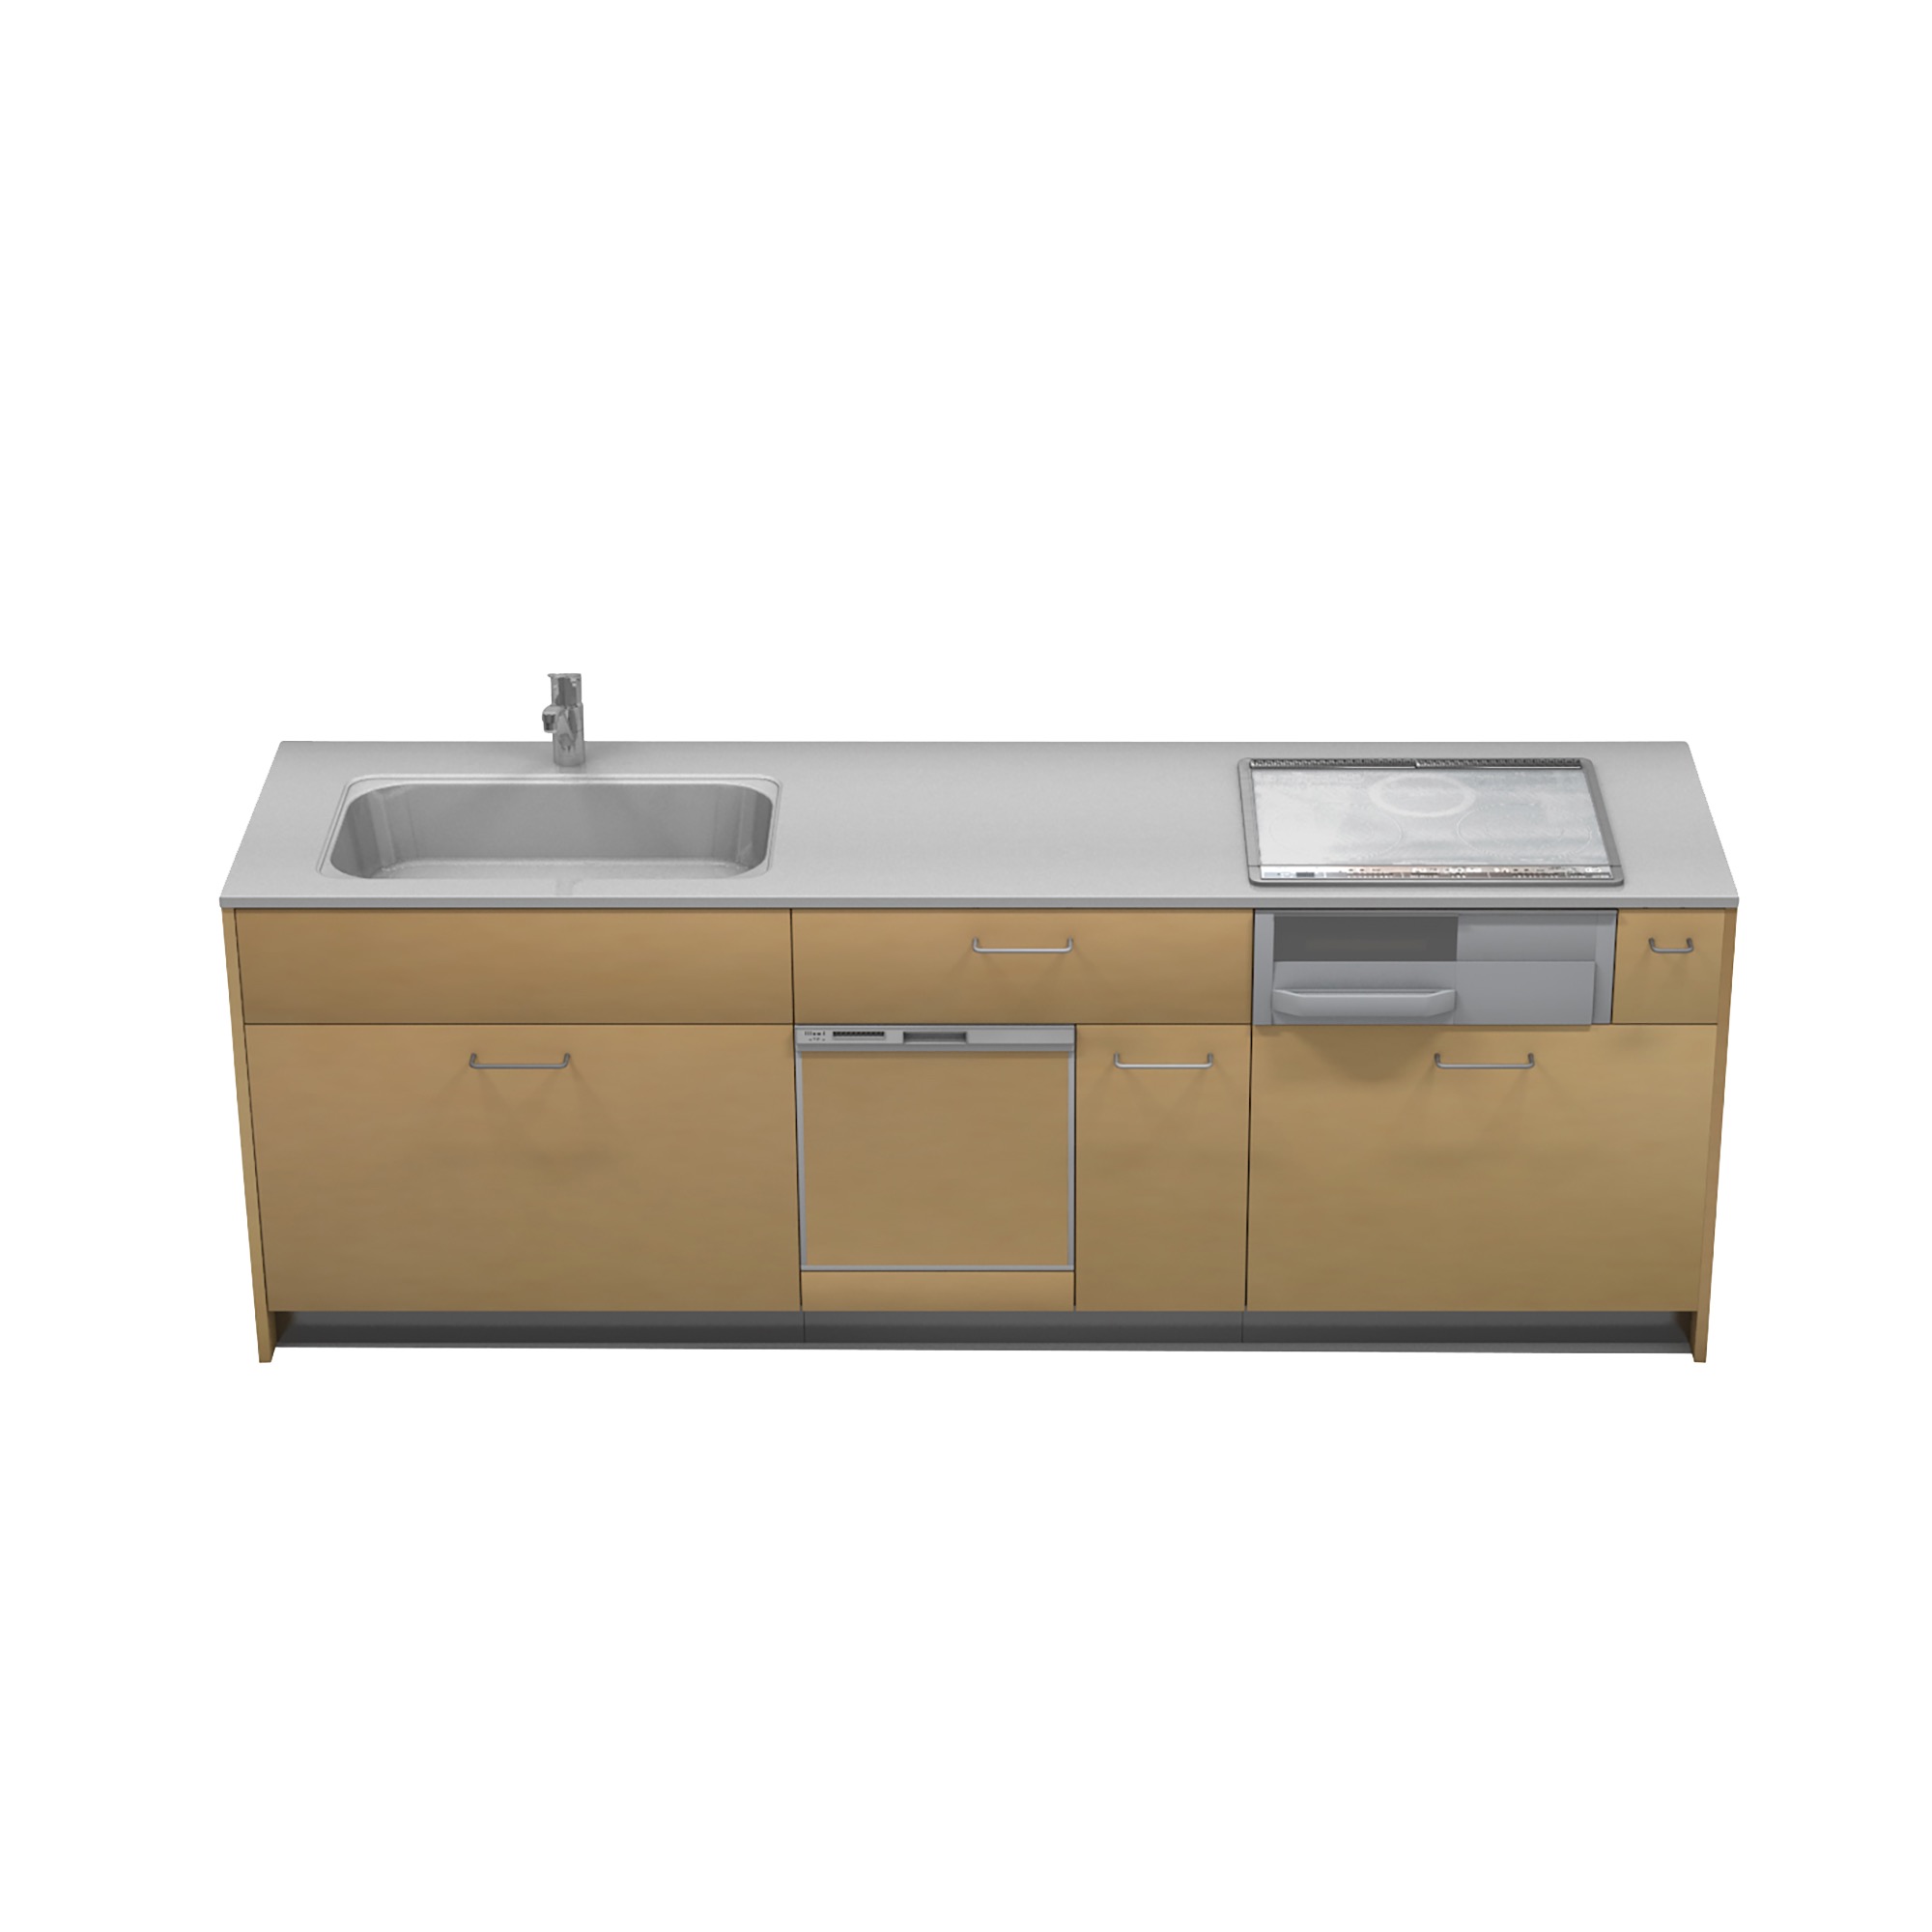 キッチンベース 対面型 食洗機タイプ KB-KC018-04-G177 W2400×D720（把手は付属しません）※ 別売り品の水栓・コンロ・食洗機を設置した時のイメージです